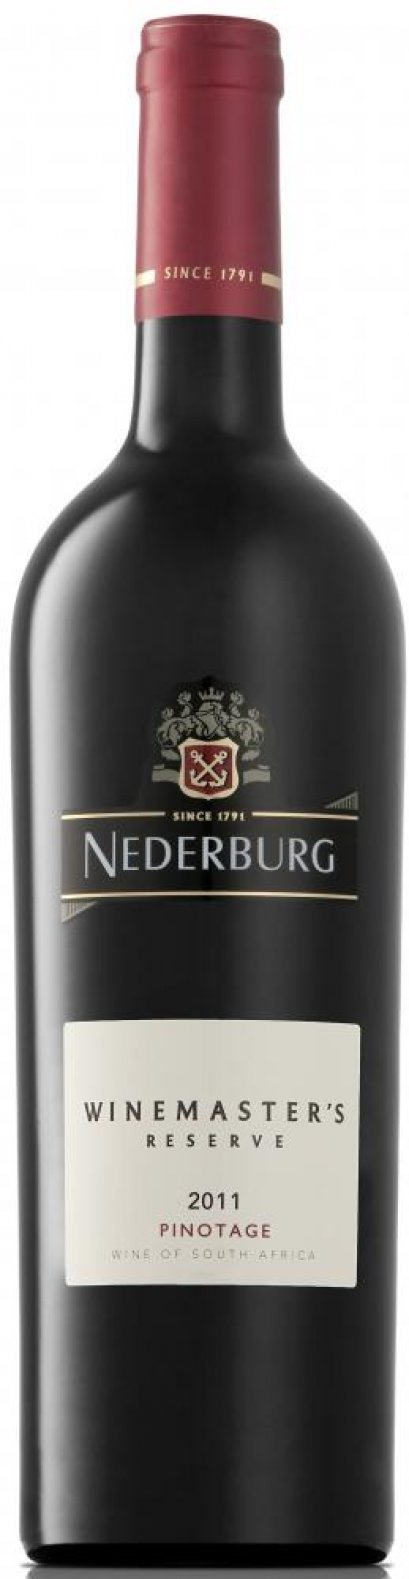 ลัง 12 ขวด Nederburg Winemasters Reserve Pinotage 2011